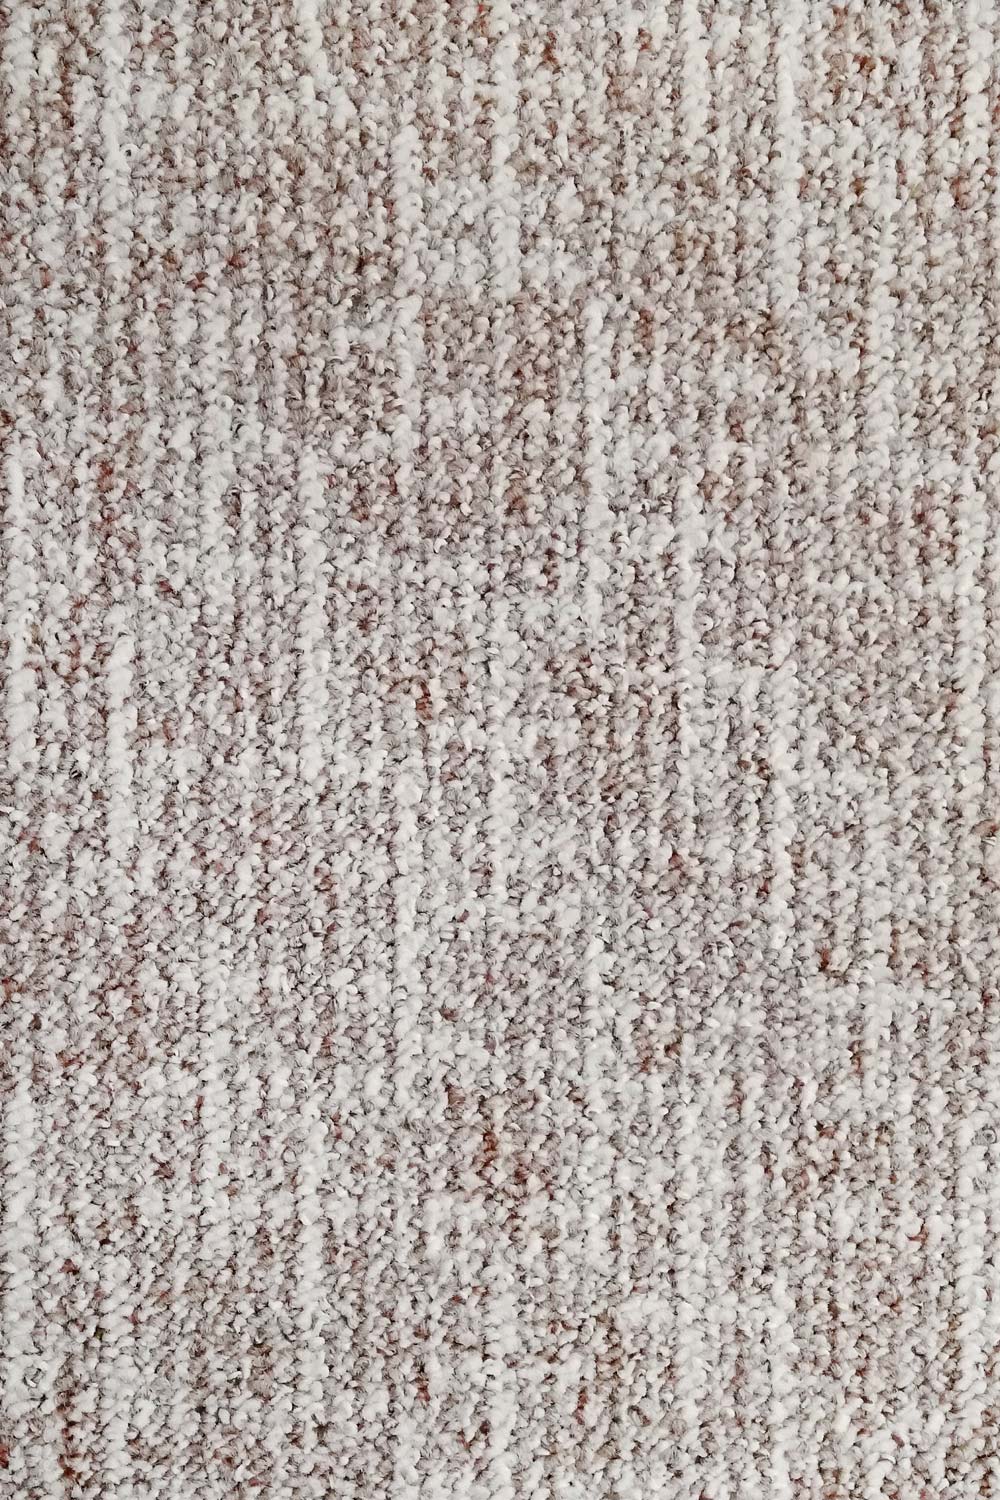 Metrážový koberec NOVELLE 69 300 cm